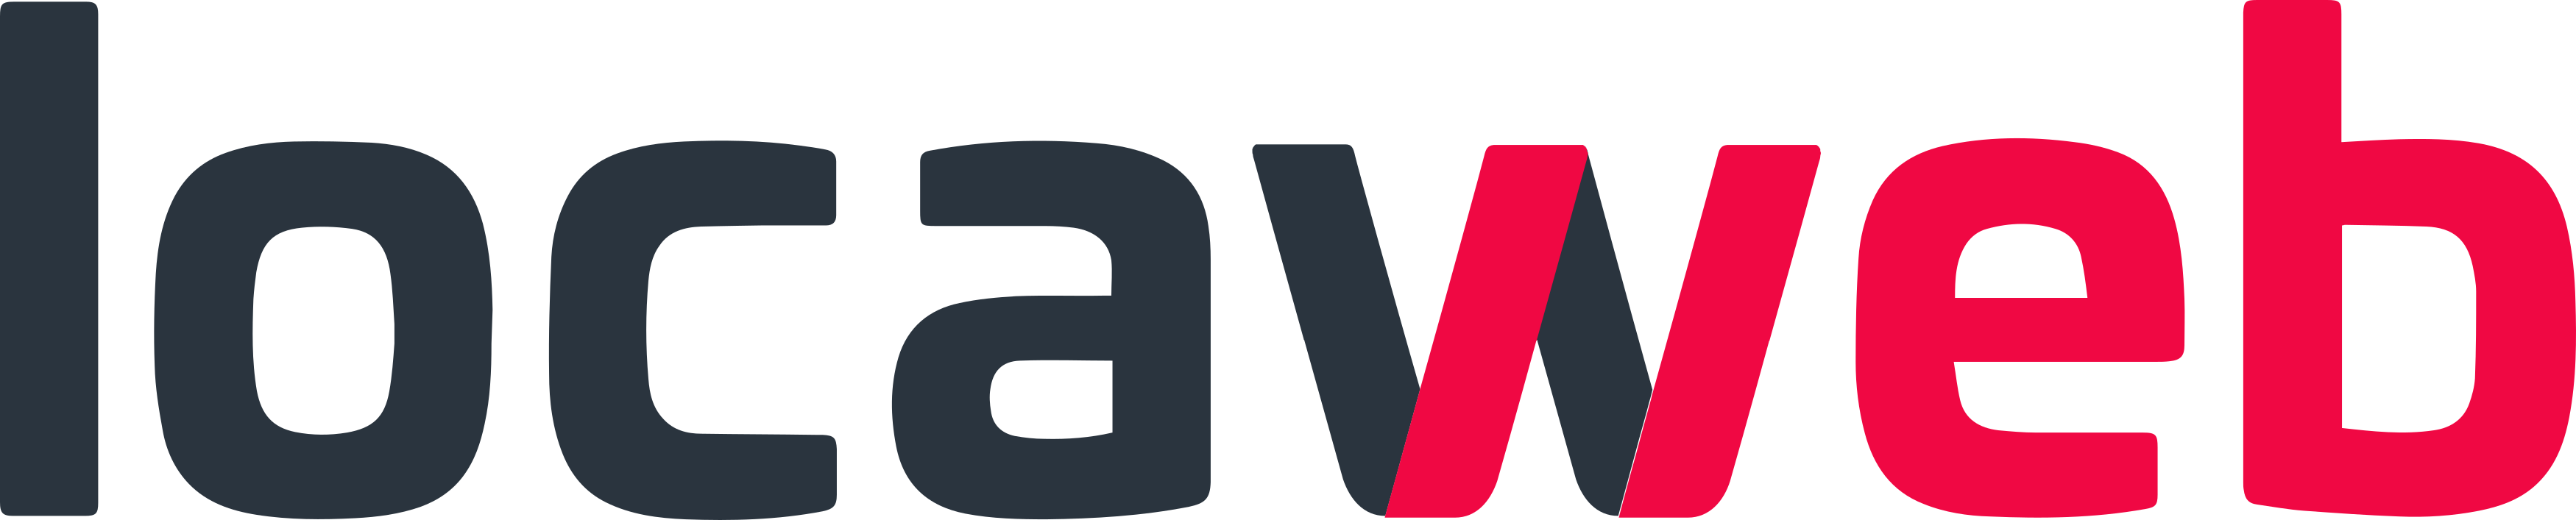 LocaWeb Servicos de Internet logo